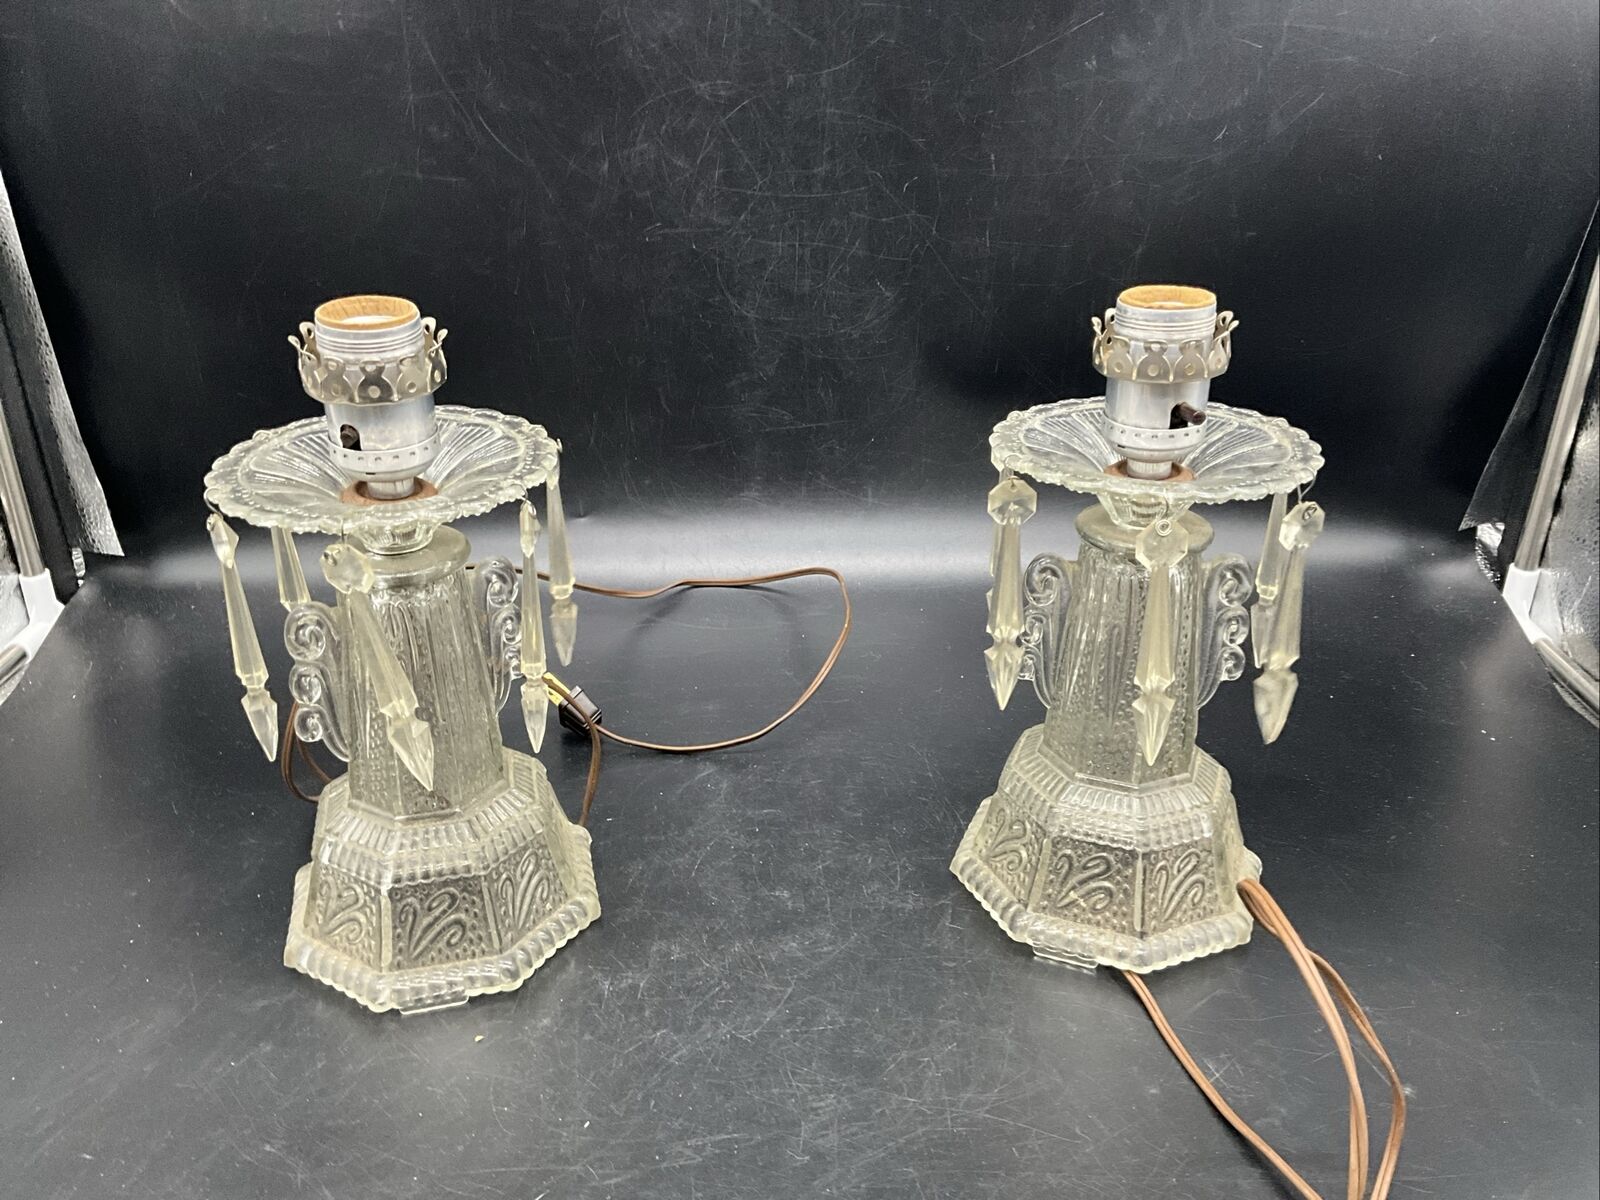 Pair Of Antique Leviton Art Deco Clear Glass Boudoir Lamps 7 3/8